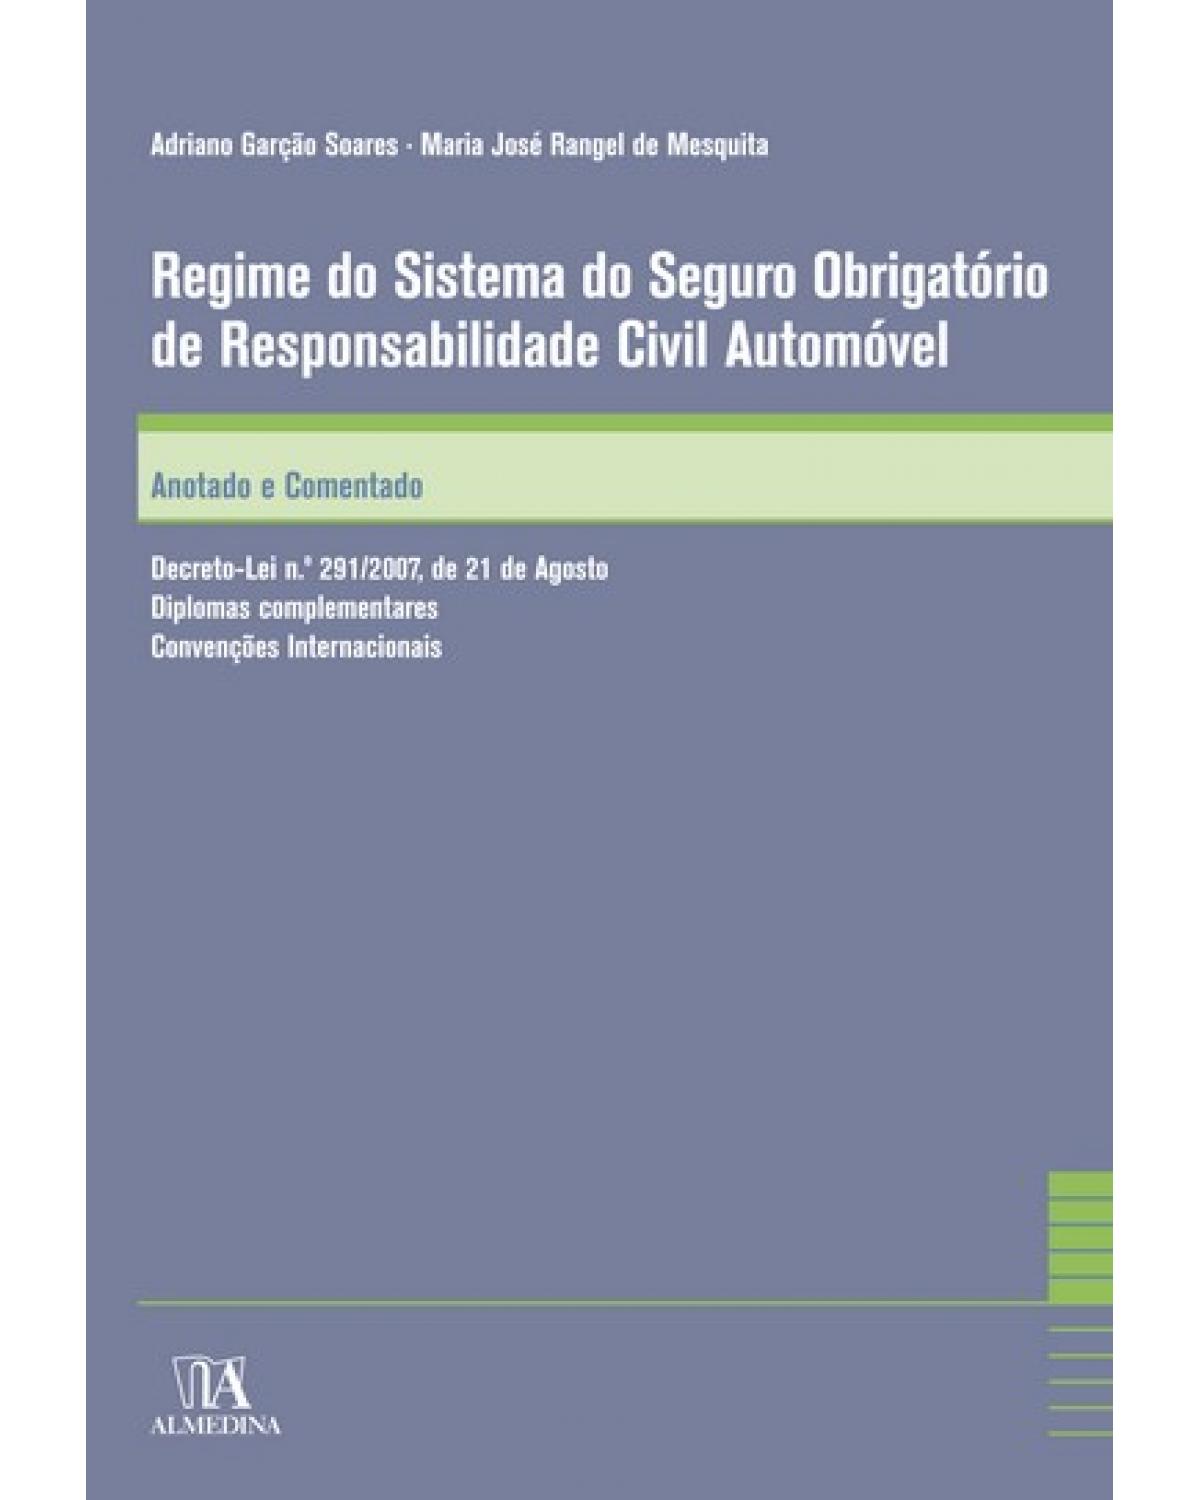 Regime do sistema do seguro obrigatório de responsabilidade civil automóvel - anotado e comentado - 1ª Edição | 2008